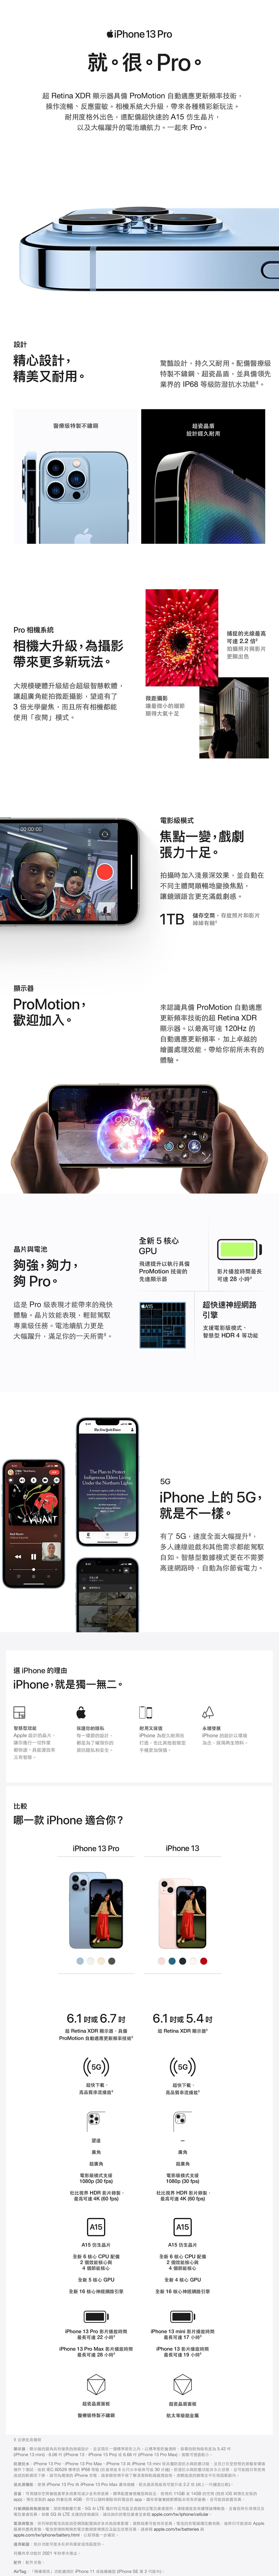 APPLE iPhone 13 Pro，搭載 A15 晶片，領先業界的 IP68 等級防潑抗水功能，最先進的雙相機系統，新增電影模式、微距攝影，著重耐用性，超瓷晶盾比一般智慧型手機的玻璃更堅固，電池續航力大增，較前代增加2.5小時續航力。